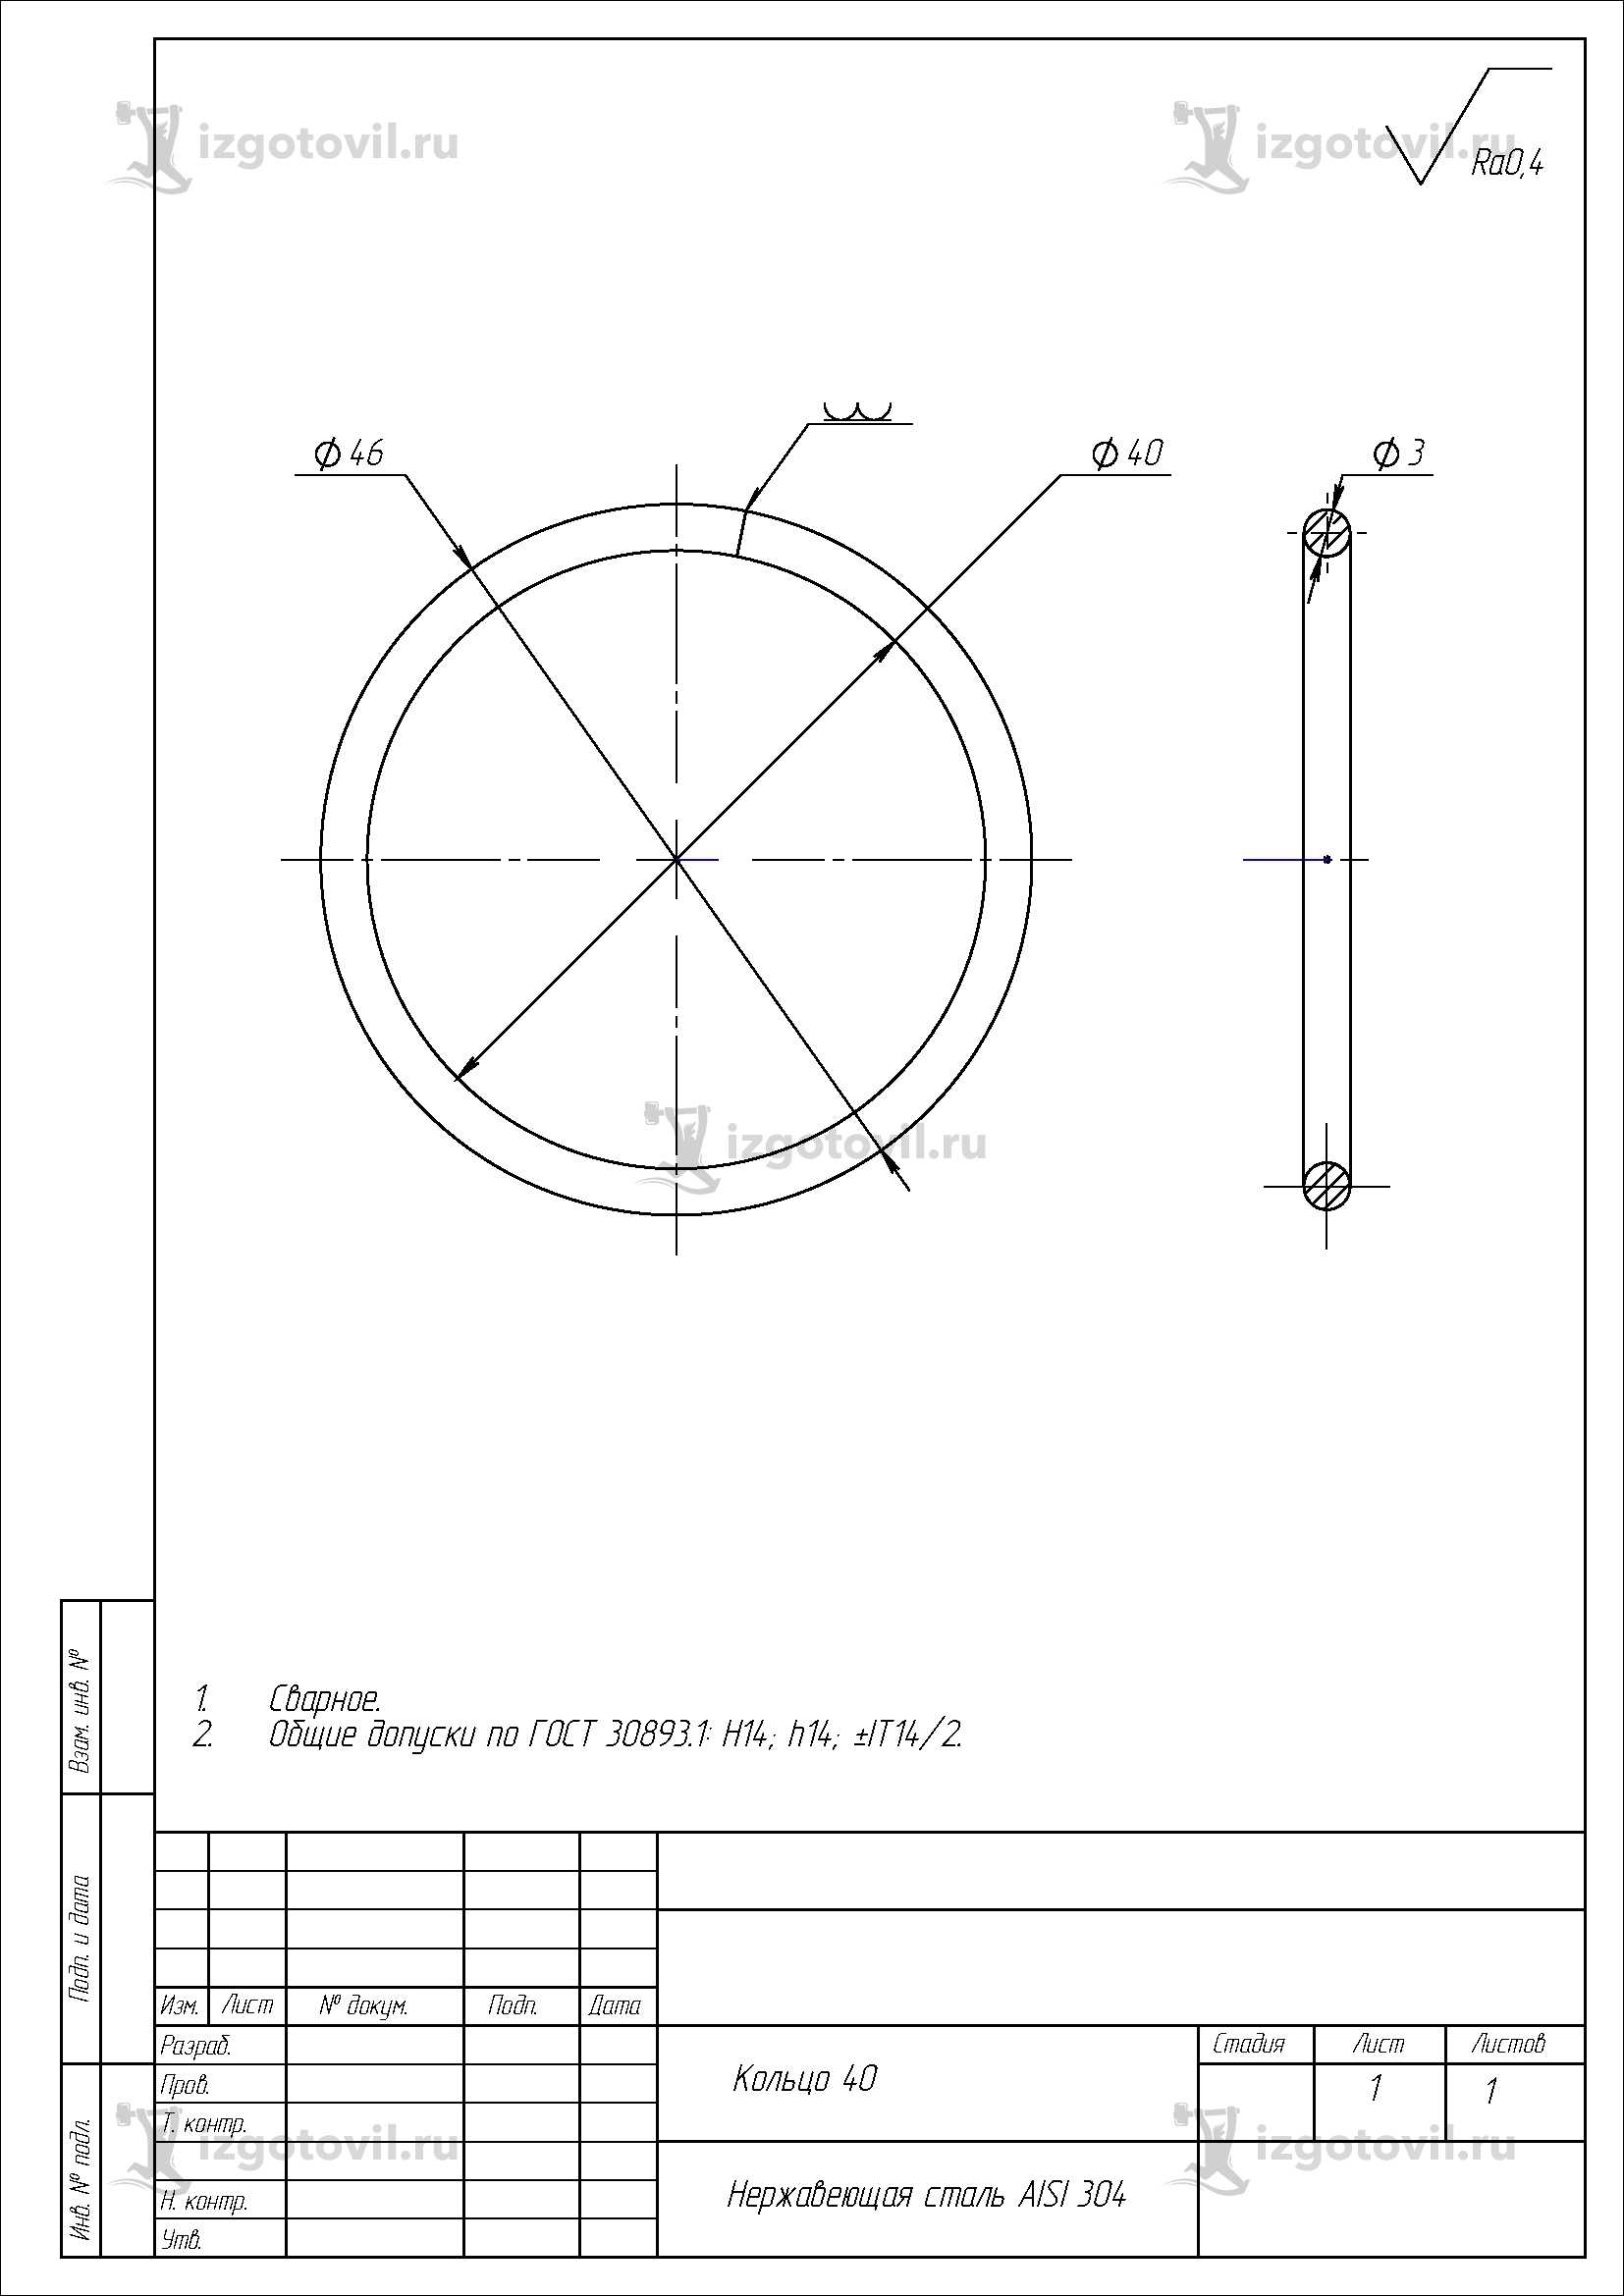 Изготовление деталей по чертежам: шаёба, полукольцо и кольцо